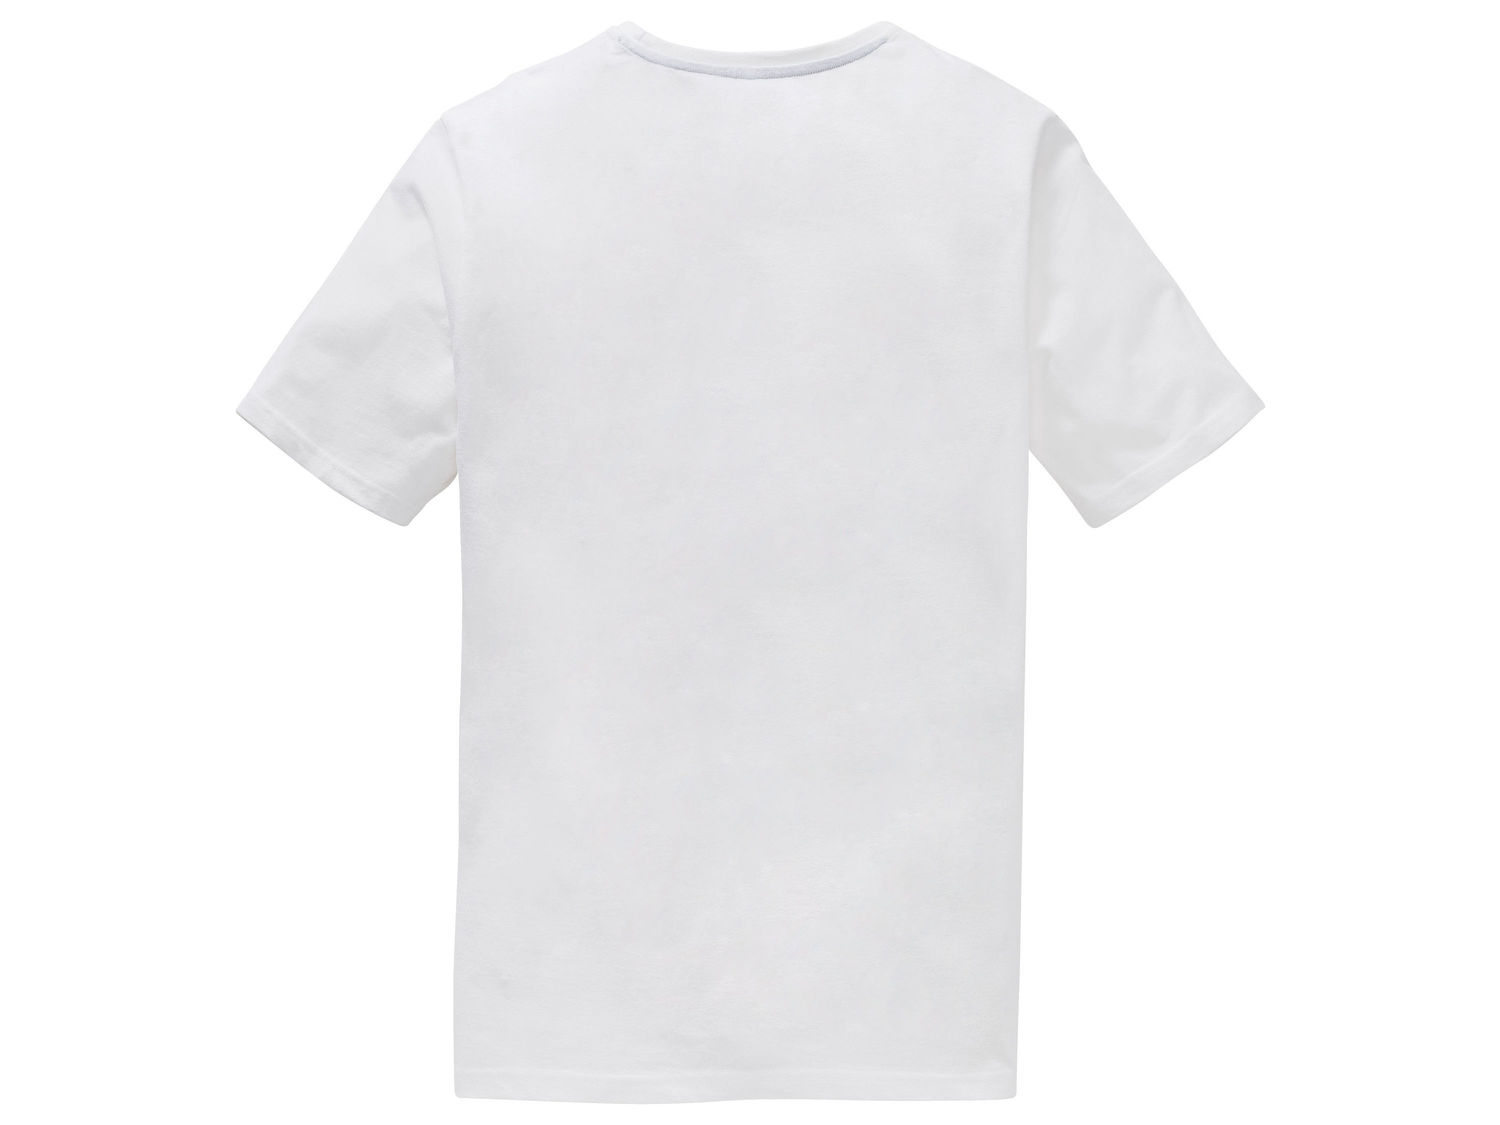 Koszulka męska Livergy, cena 15,99 PLN 
- rozmiary: M-XL
- 100% bawełny
- Hohenstein ...